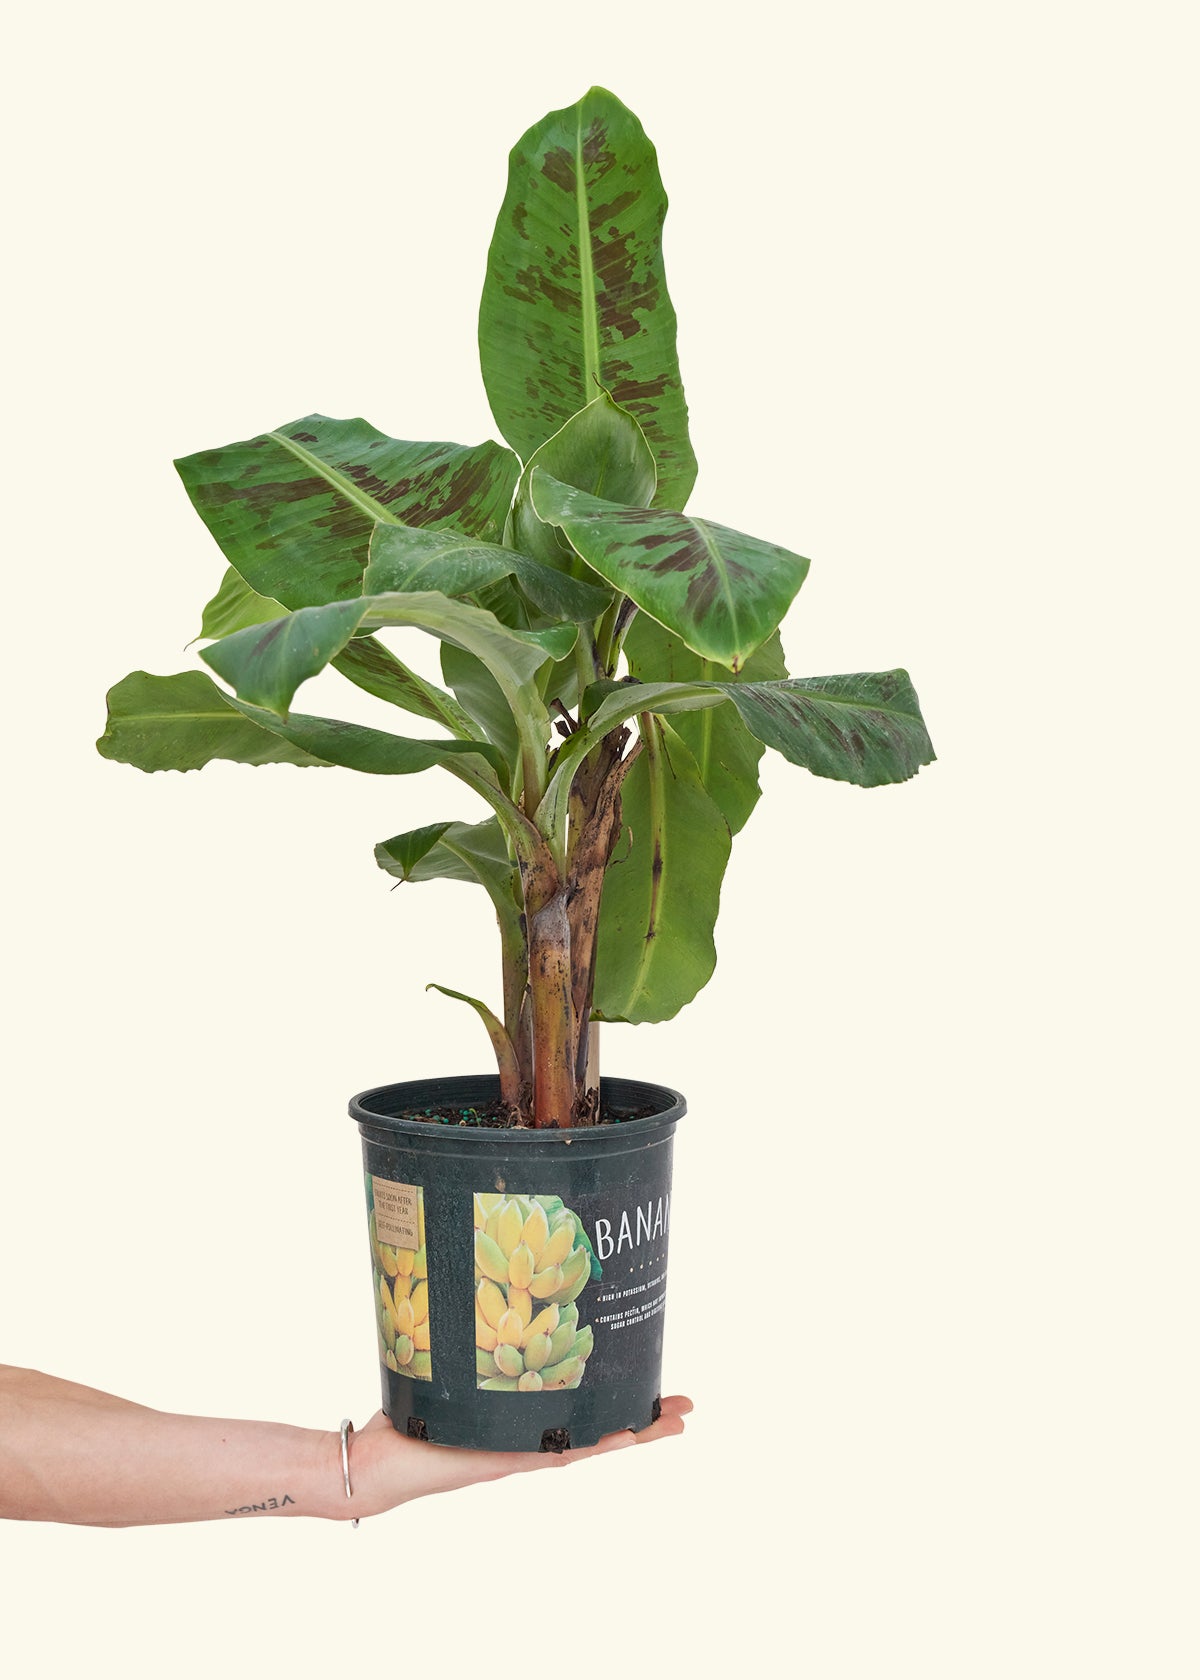 Medium Banana Tree (Musa acuminata) in a grow pot.